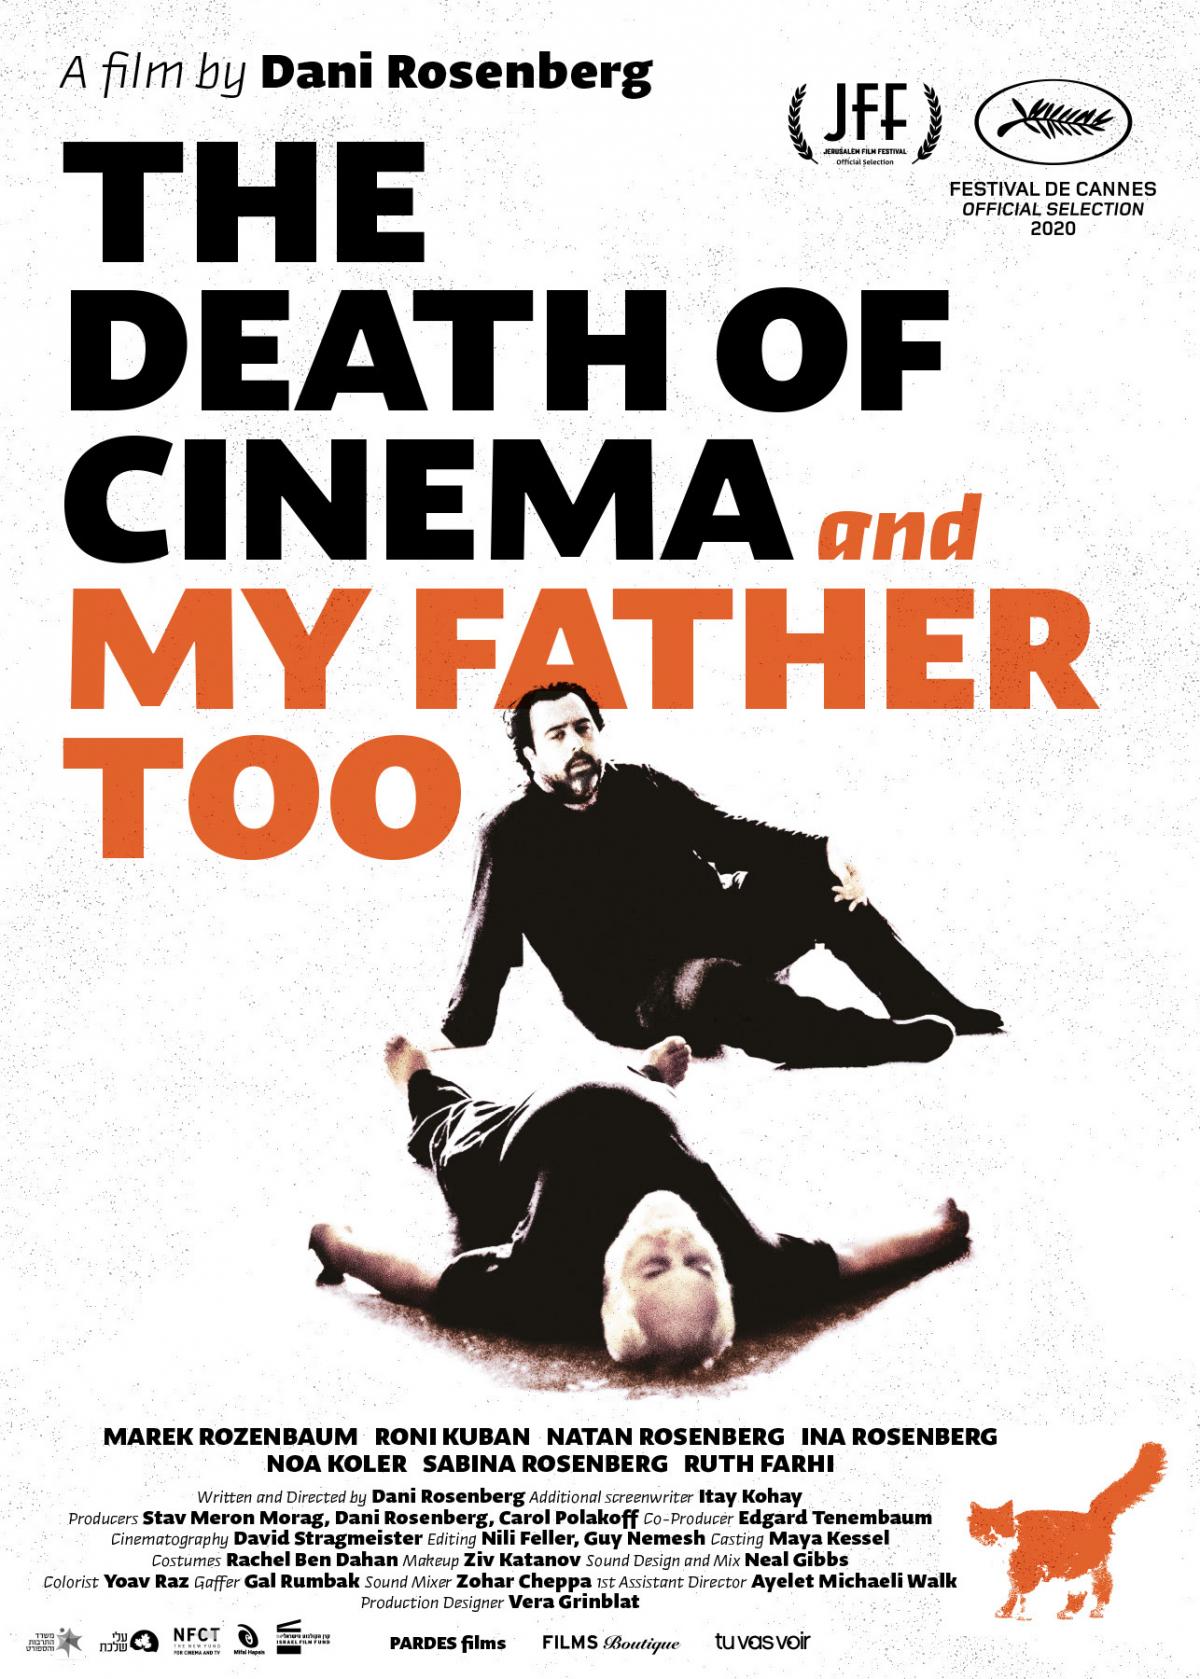 מותו של הקולנוע ושל אבא שלי גם